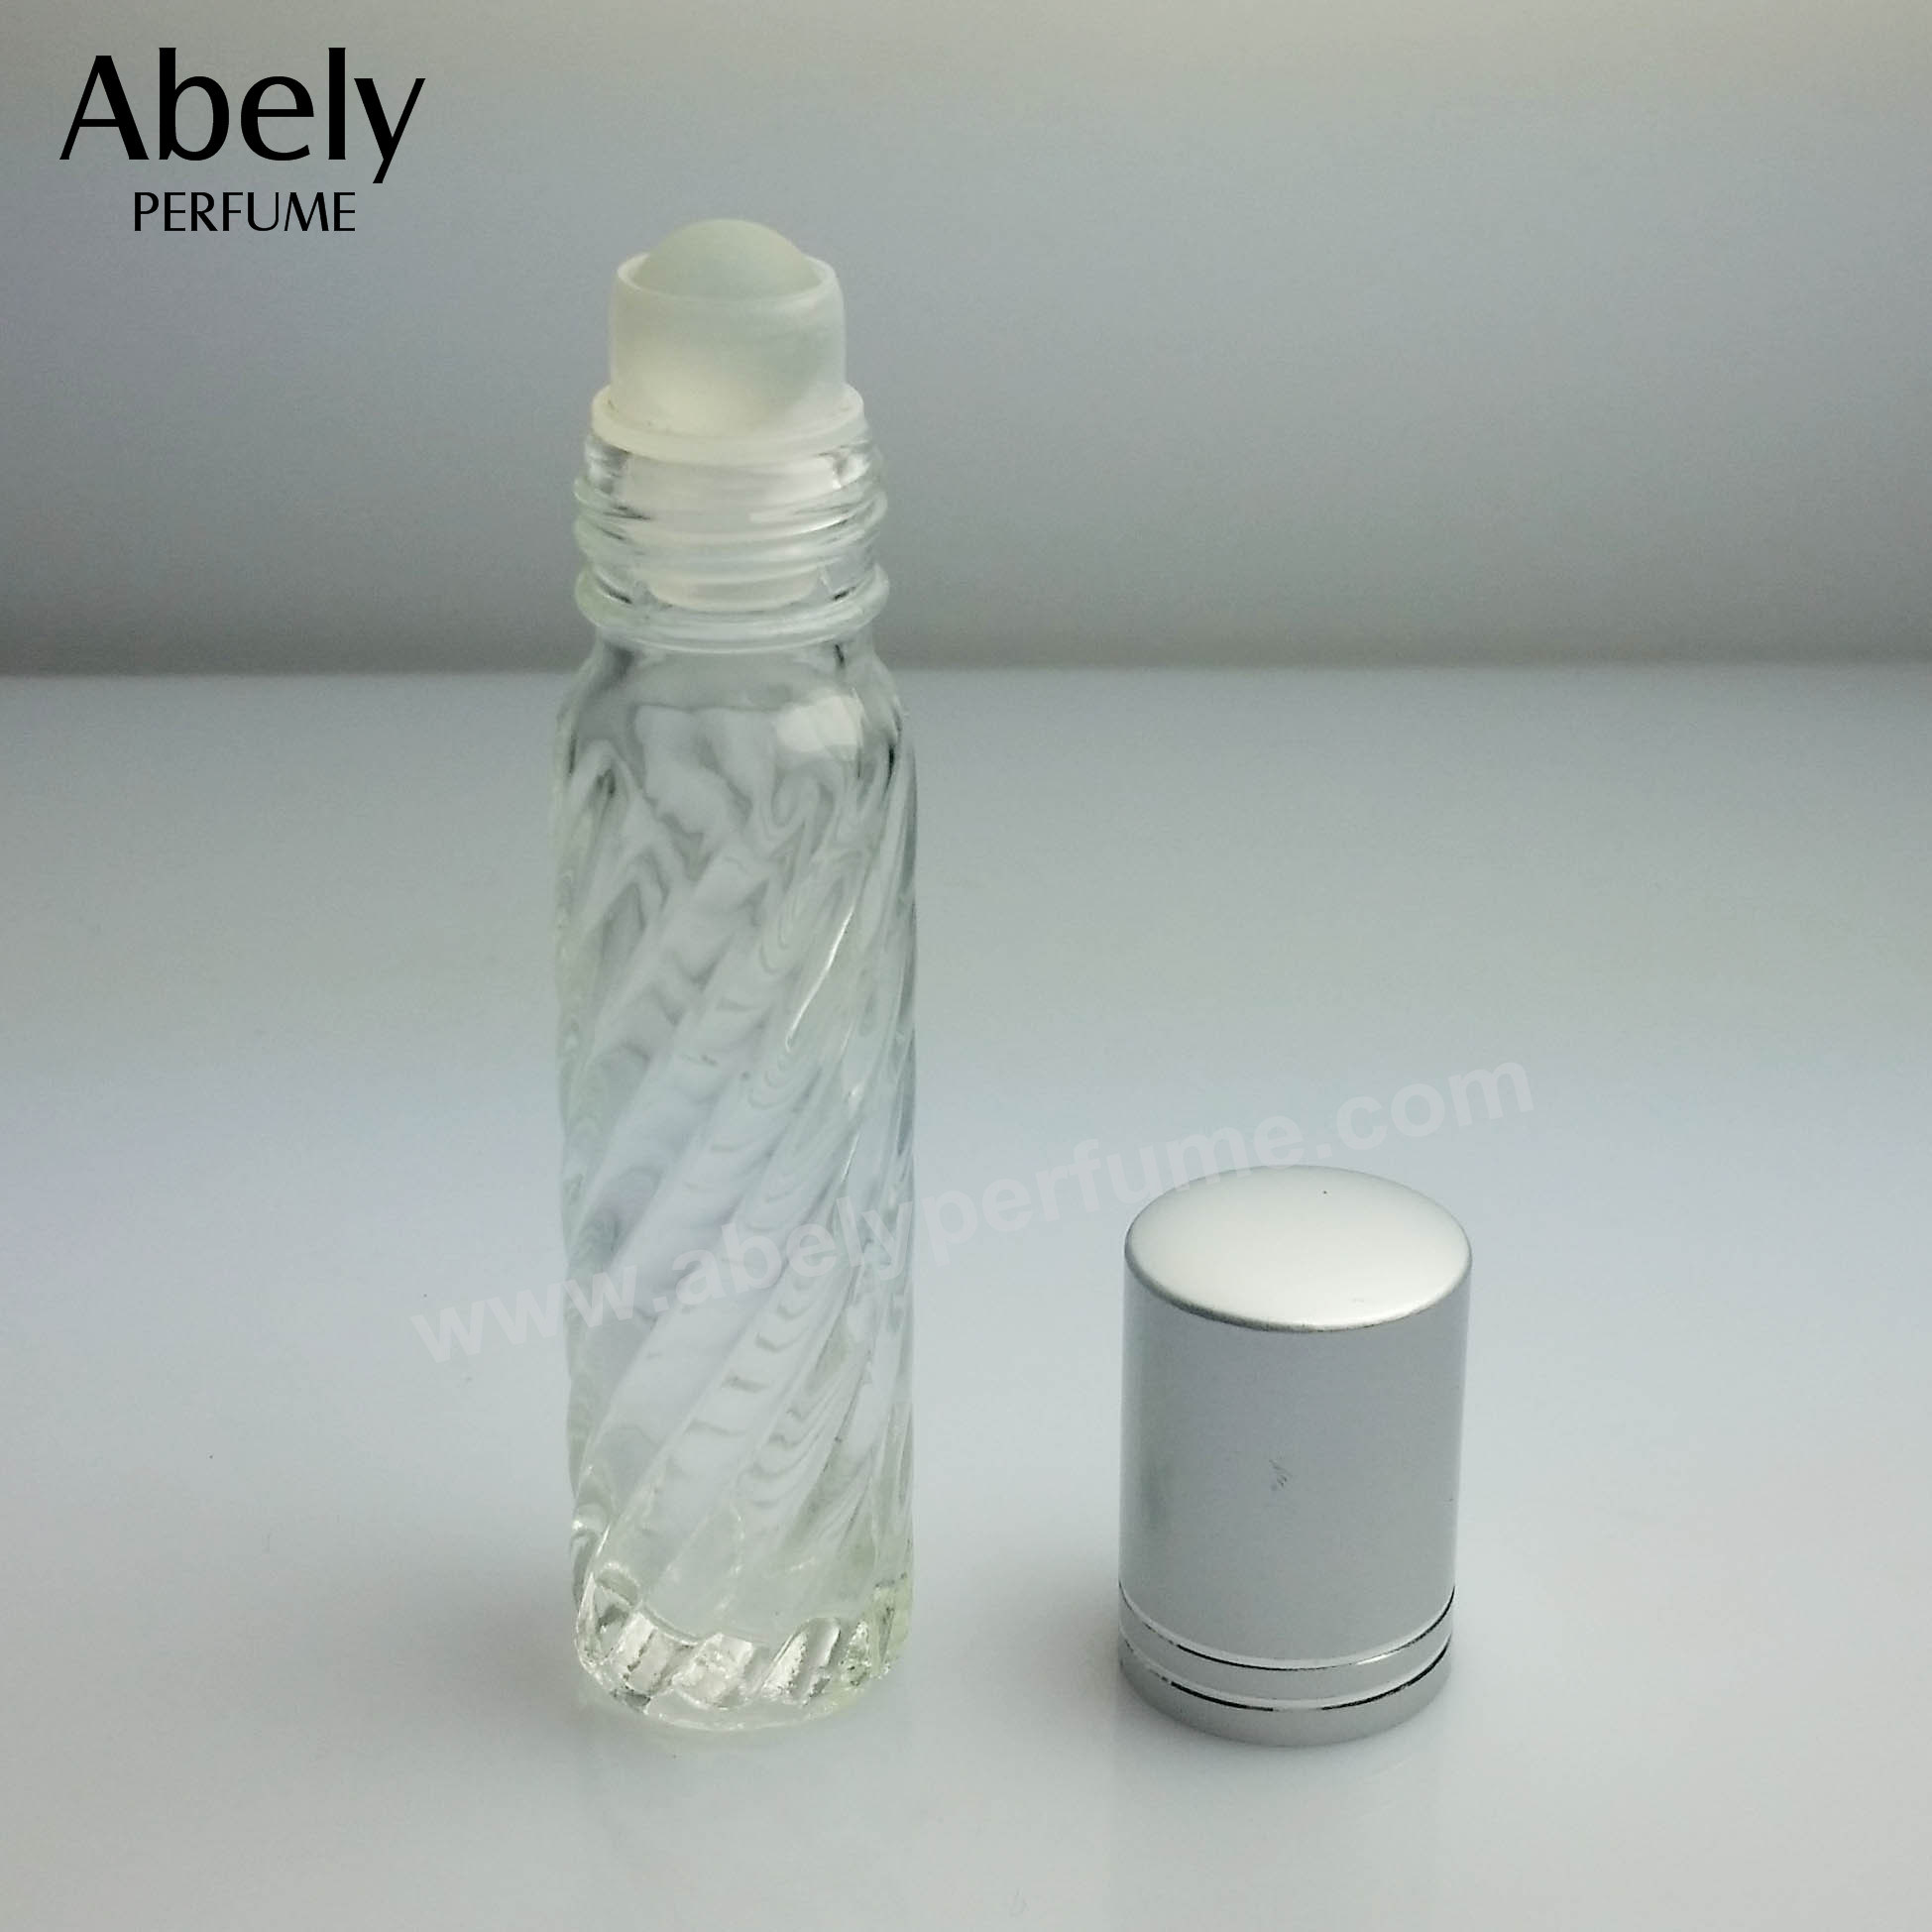 10ml Roller Bottle Roller Ball Essential Oil Bottle in Glass